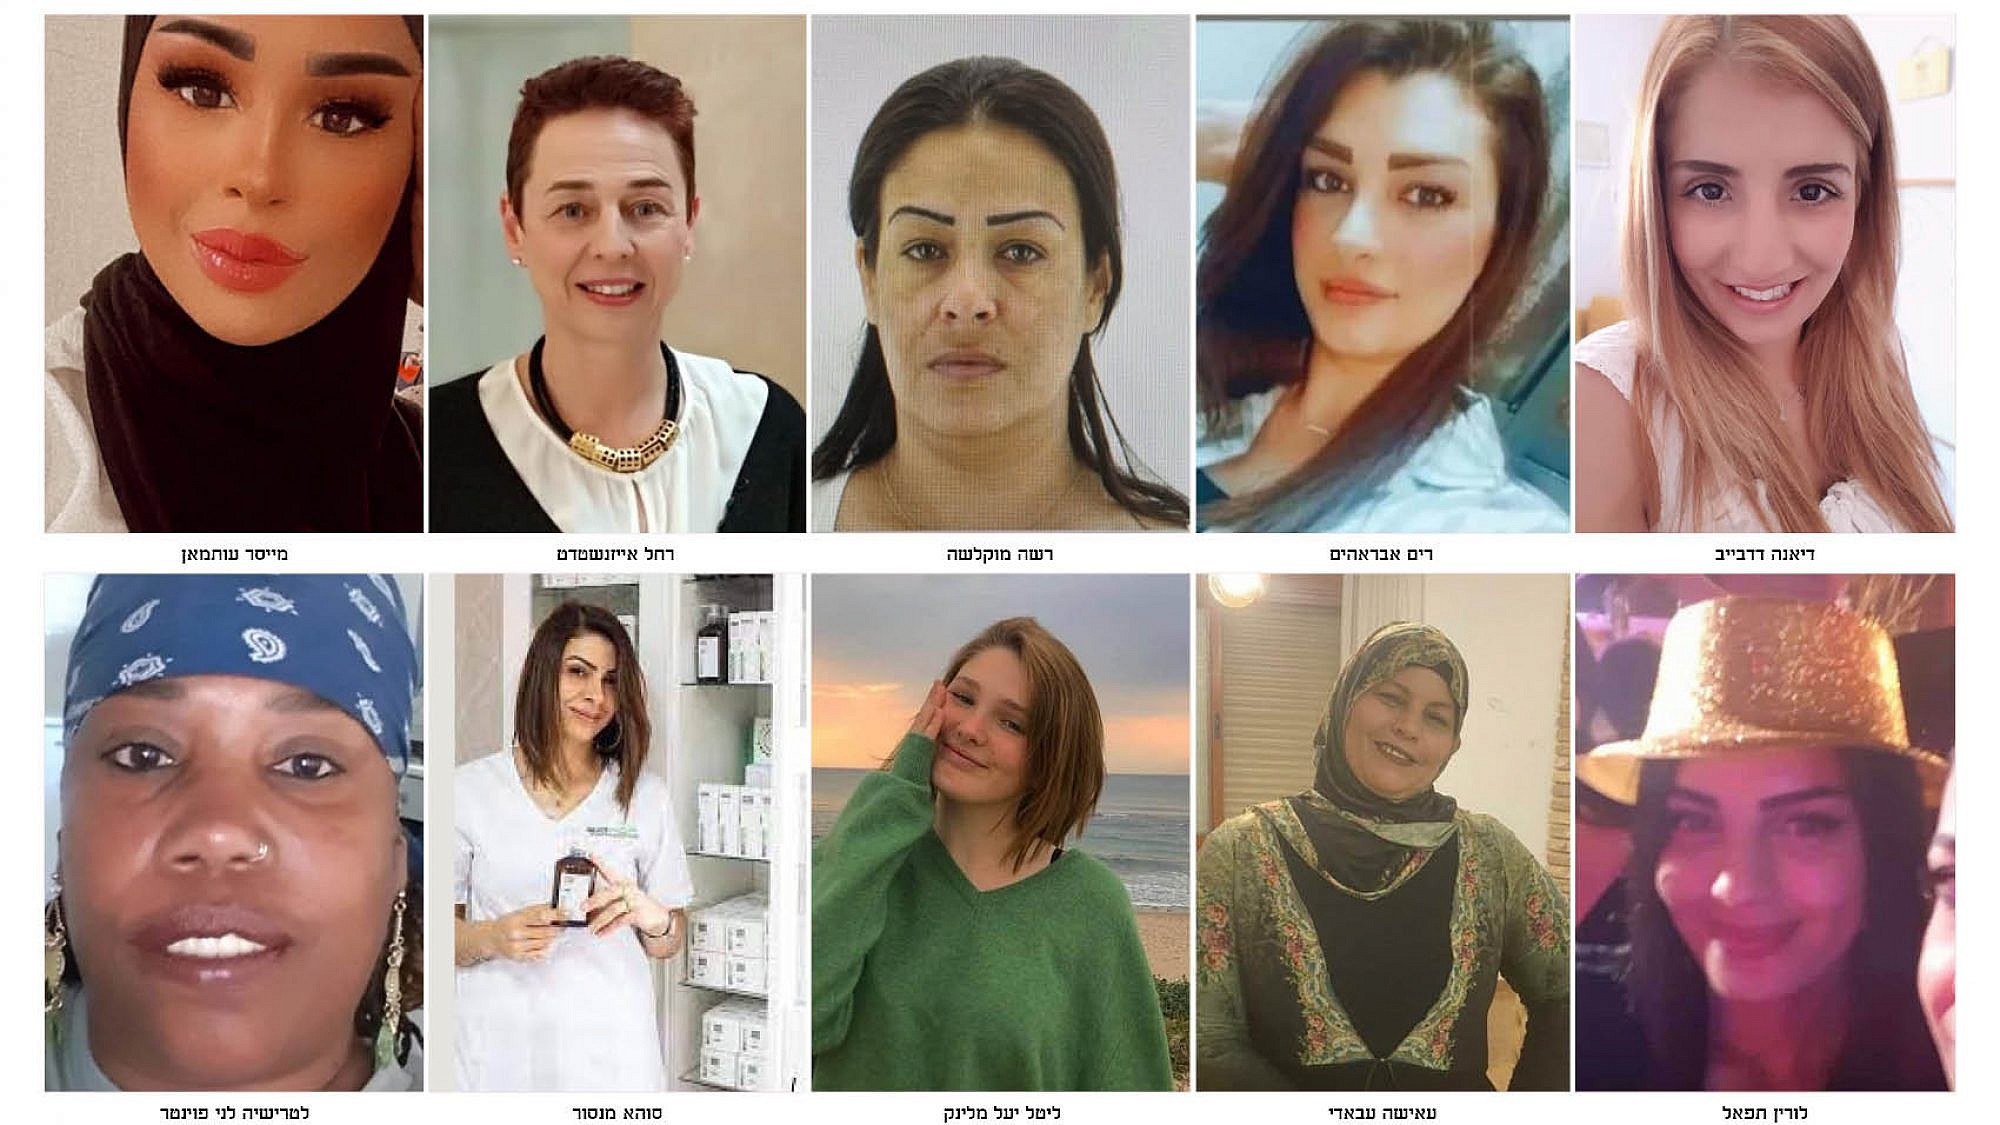 יום המאבק באלימות נגד נשים. תמונתיהן של 10 נשים שנרצחו השנה, סה"כ נרצחו השנה מעל 20 נשים בישראל